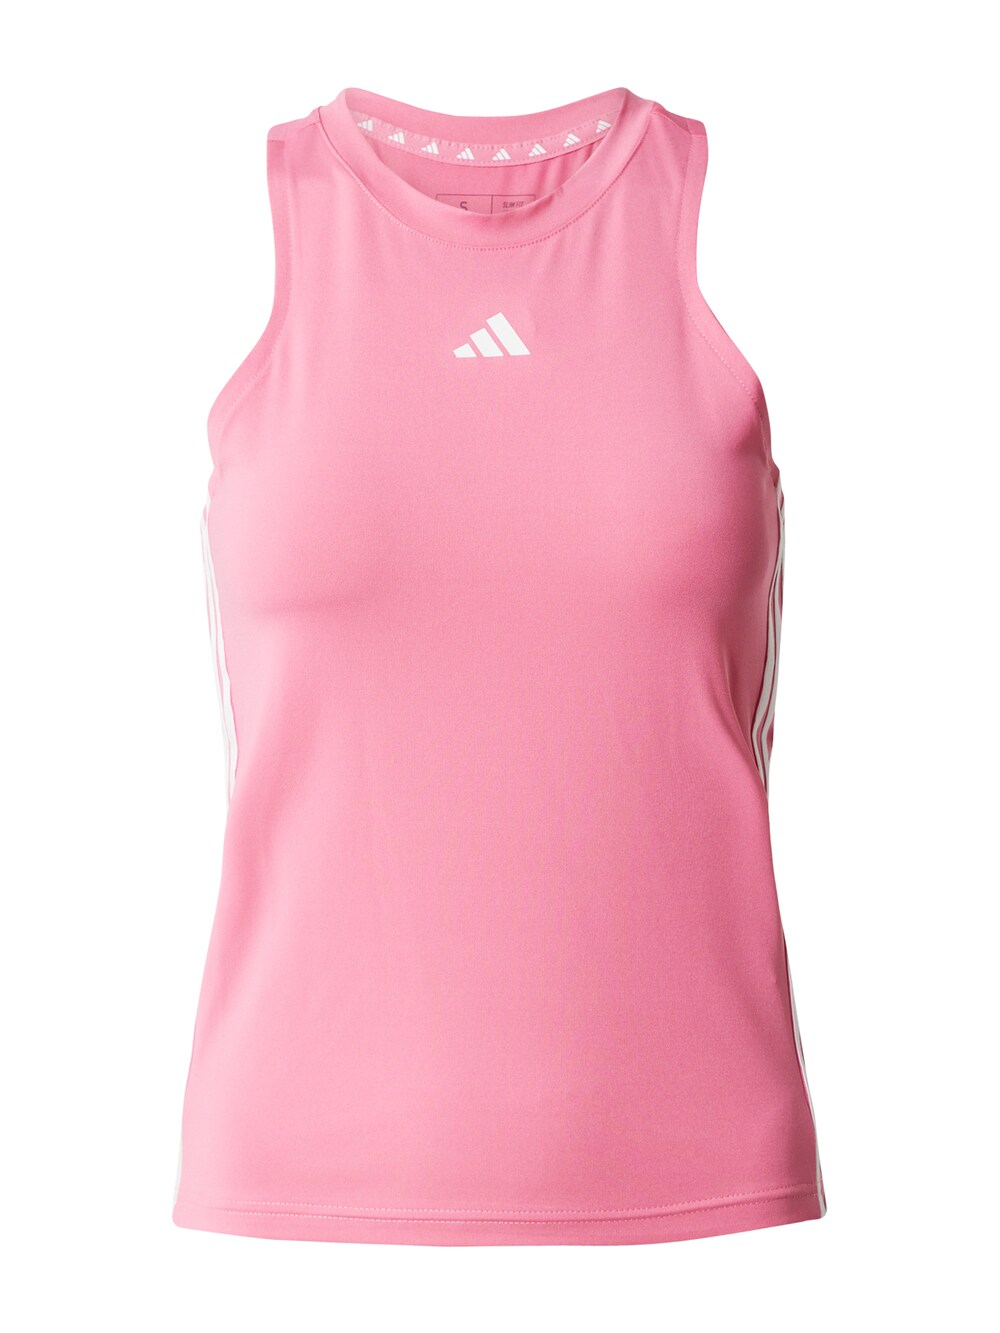 Спортивный топ Adidas Essentials, розовый